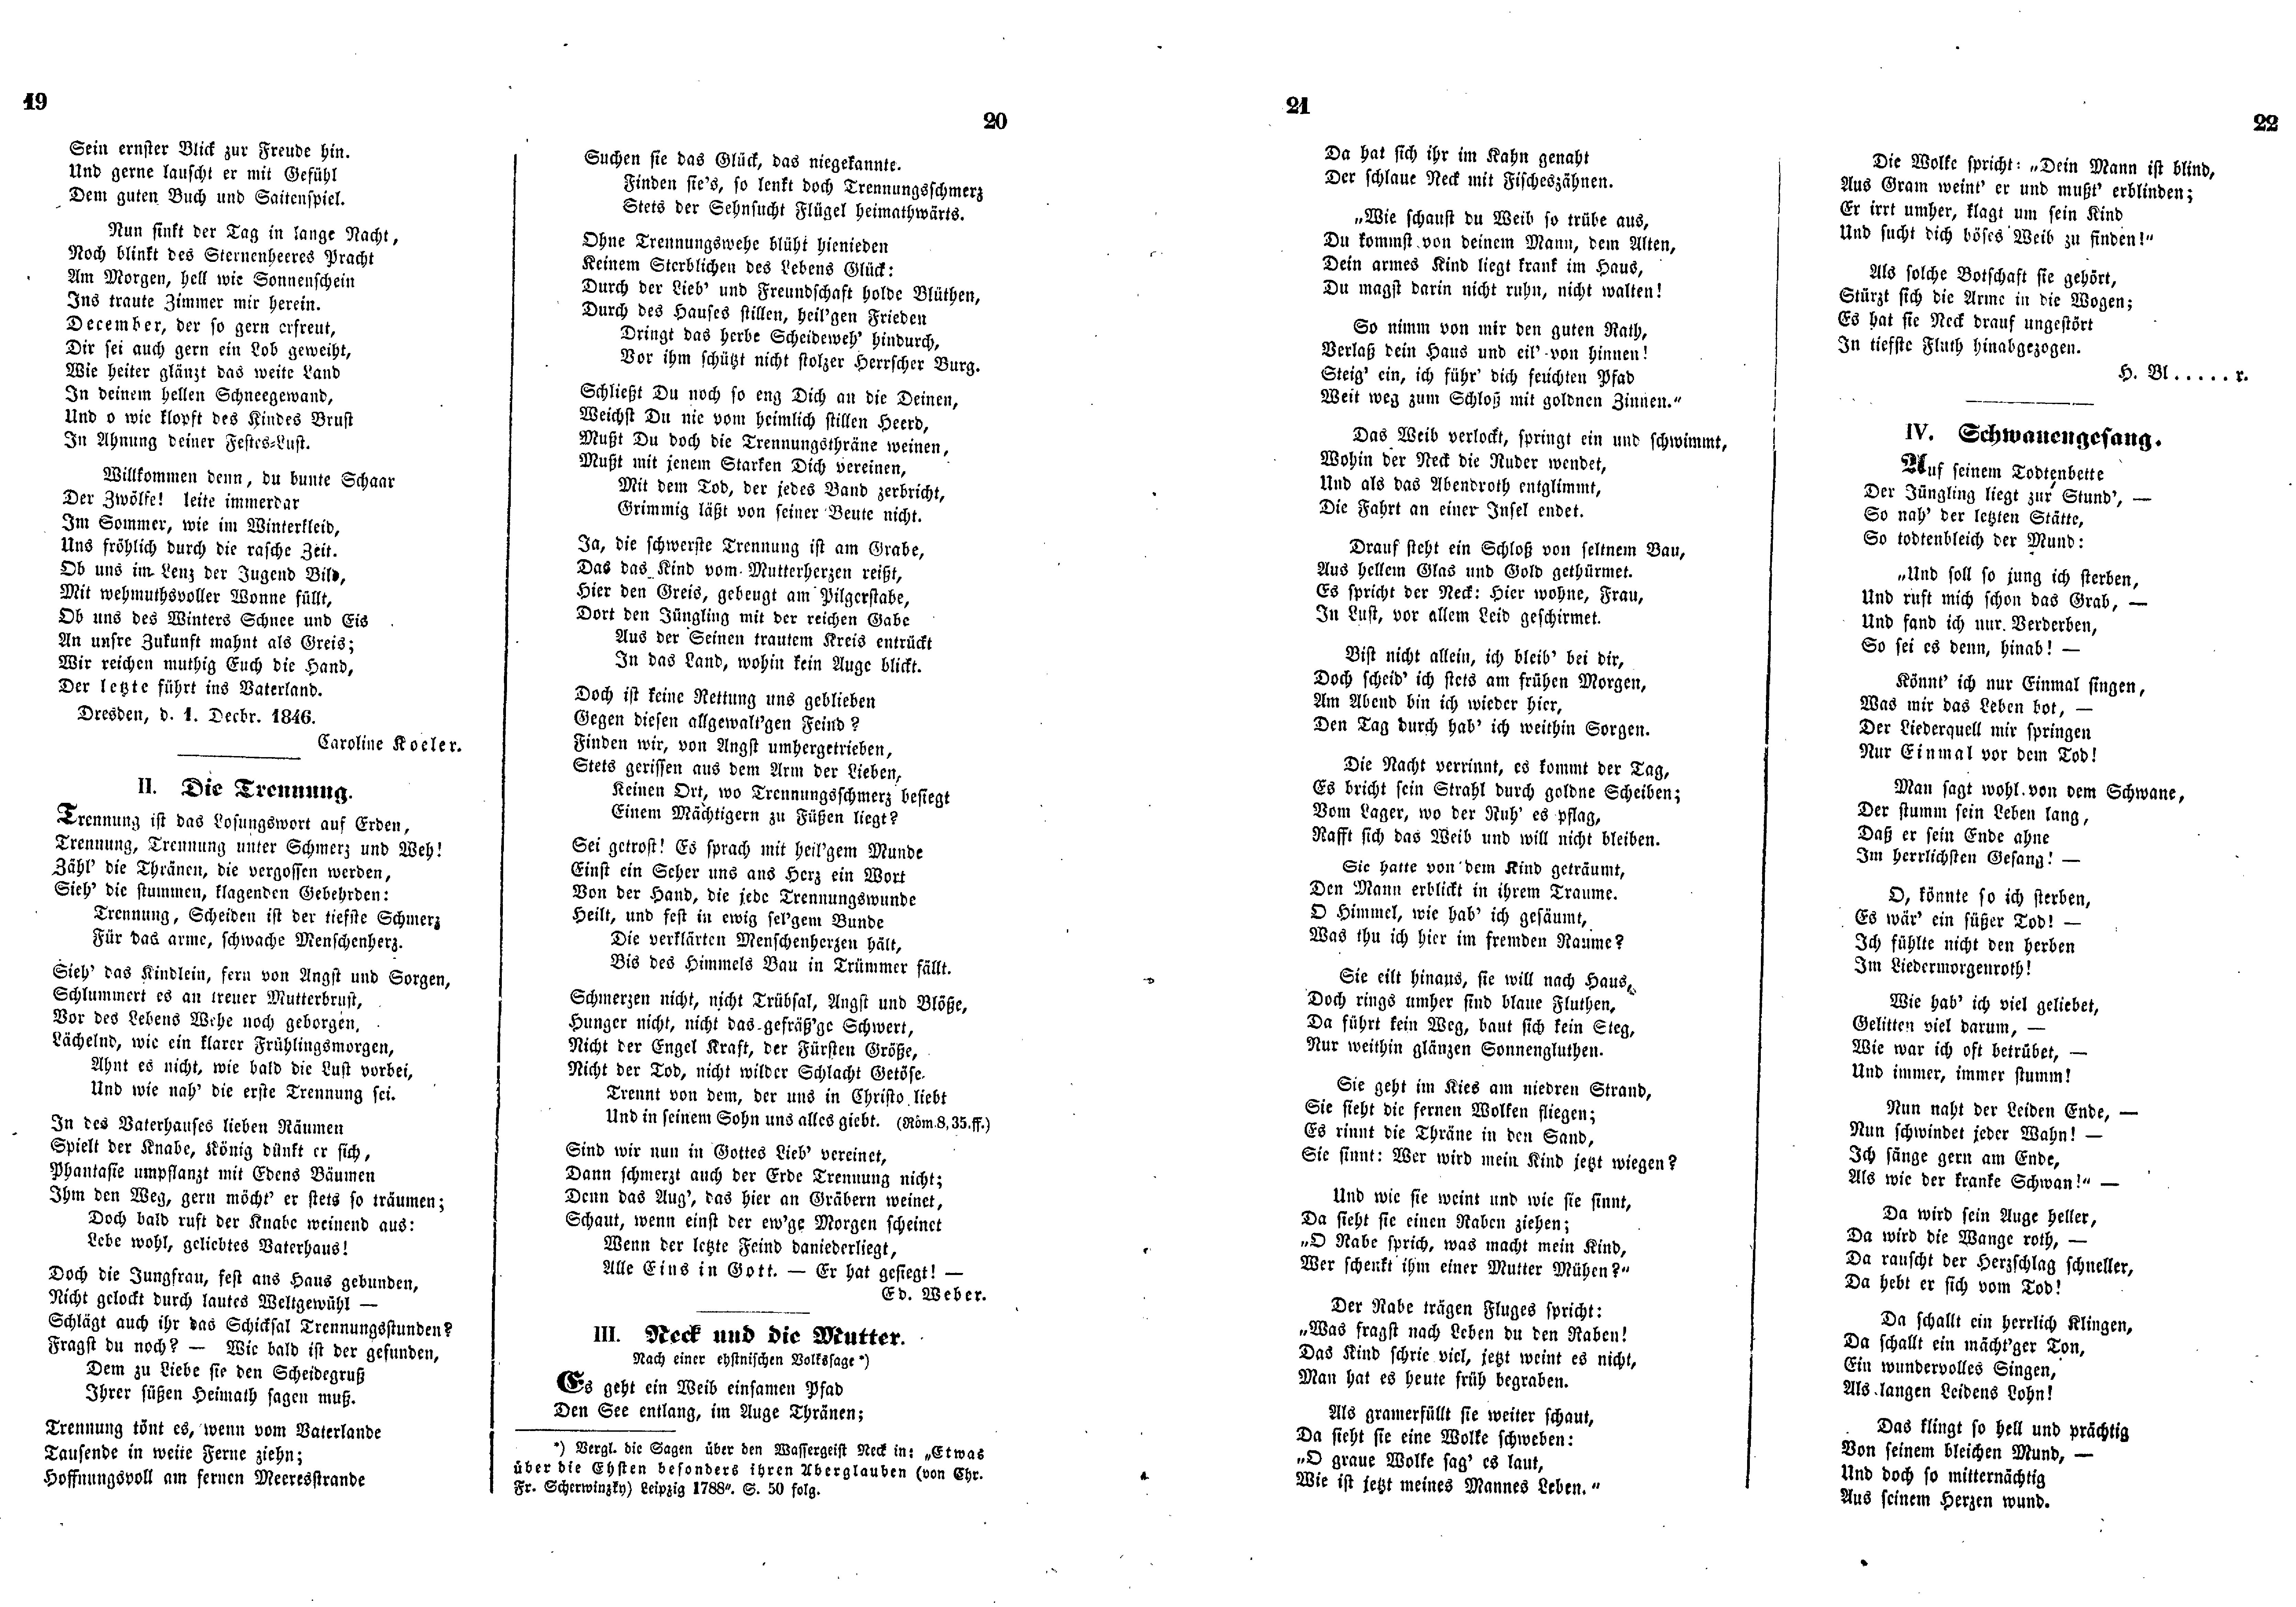 Schwanengesang (1847) | 1. (19-22) Main body of text